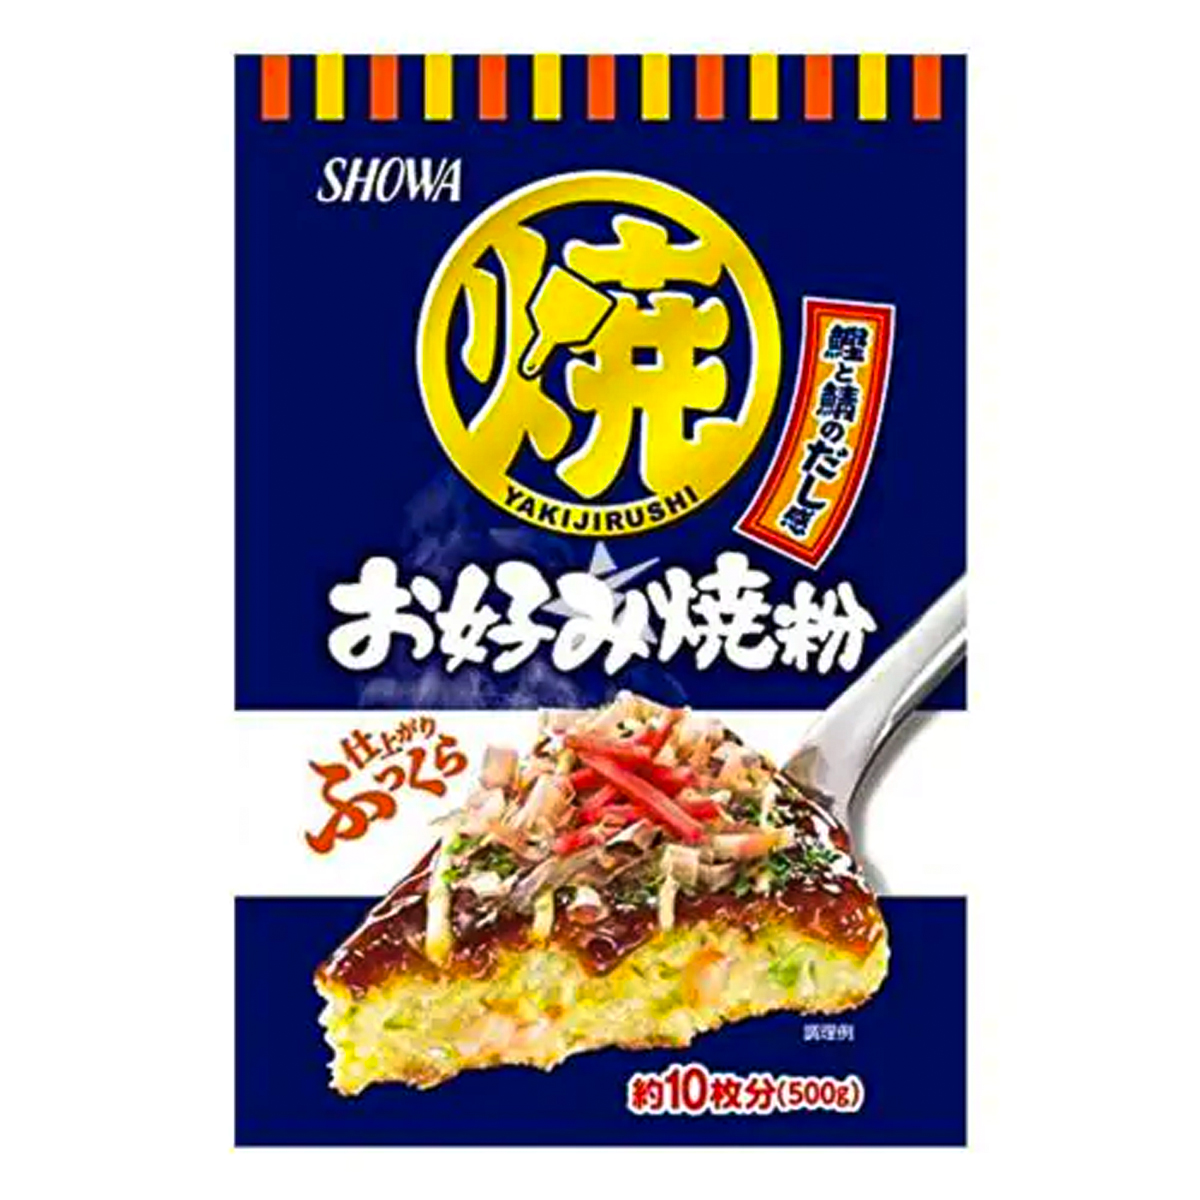 Farinha em Pó para Okonomiyaki Showa - 500 gramas